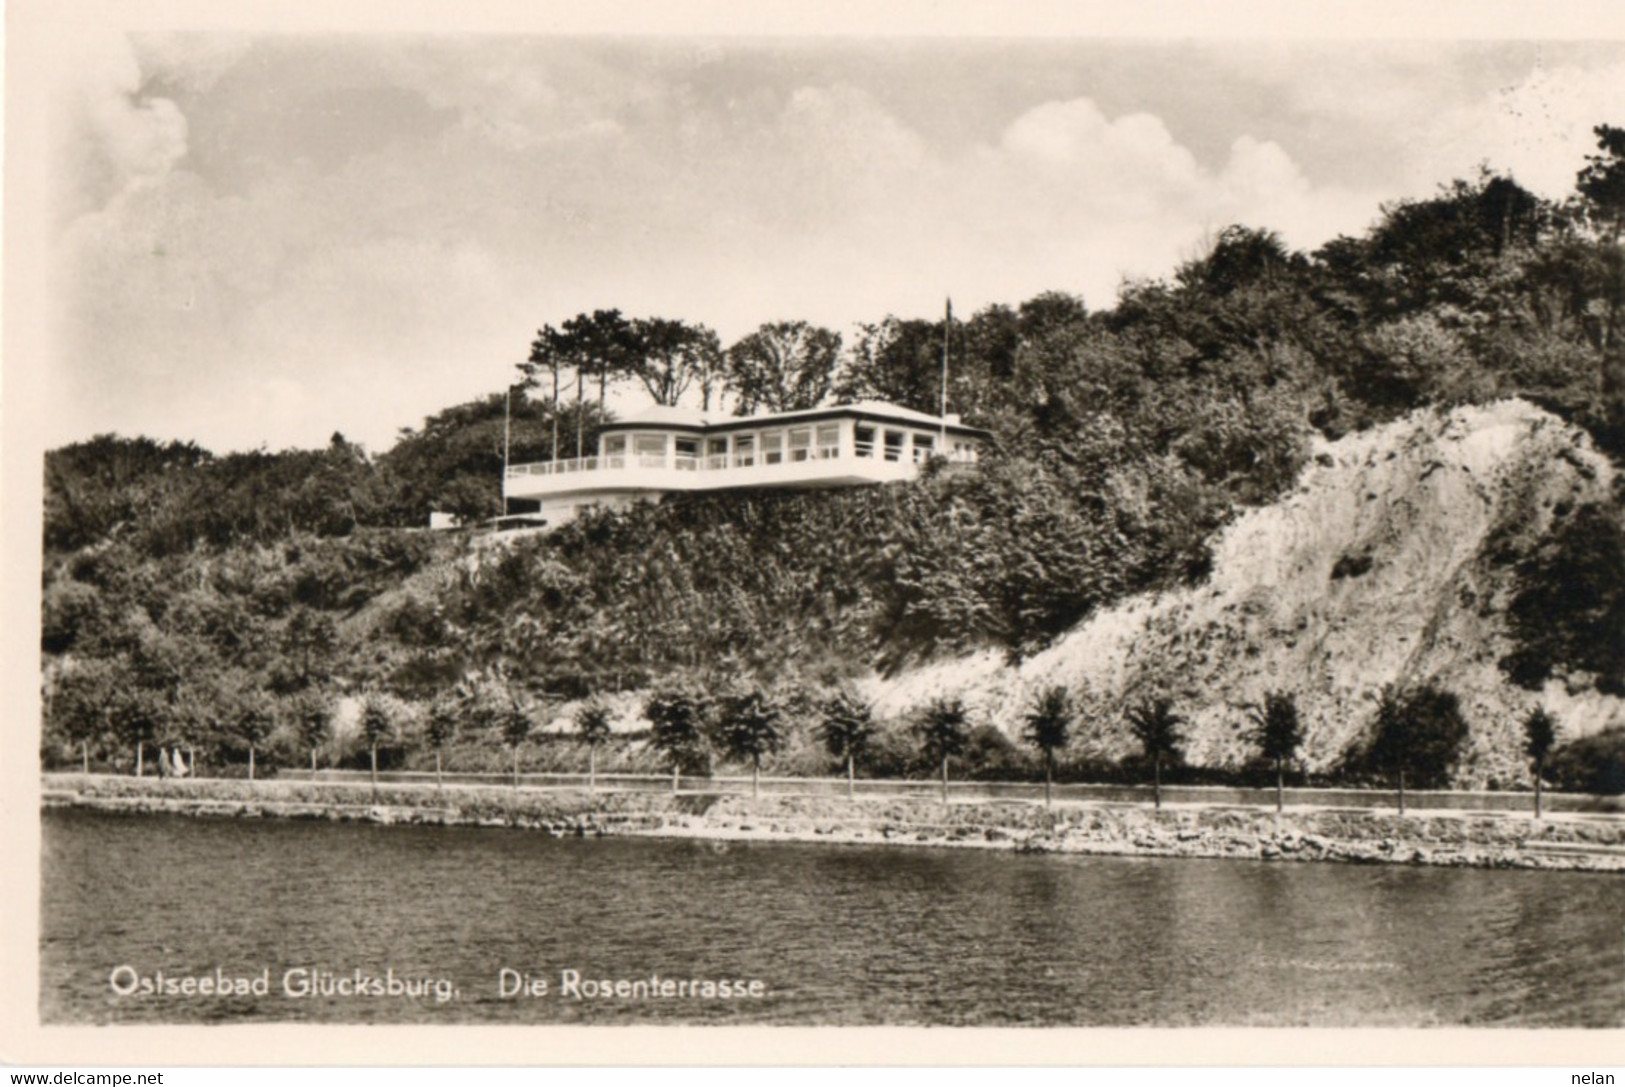 OSTSEEBAD GLUCKSBURG - DIE ROSENTERRASSE - REAL PHOTO - F.P. - Glücksburg